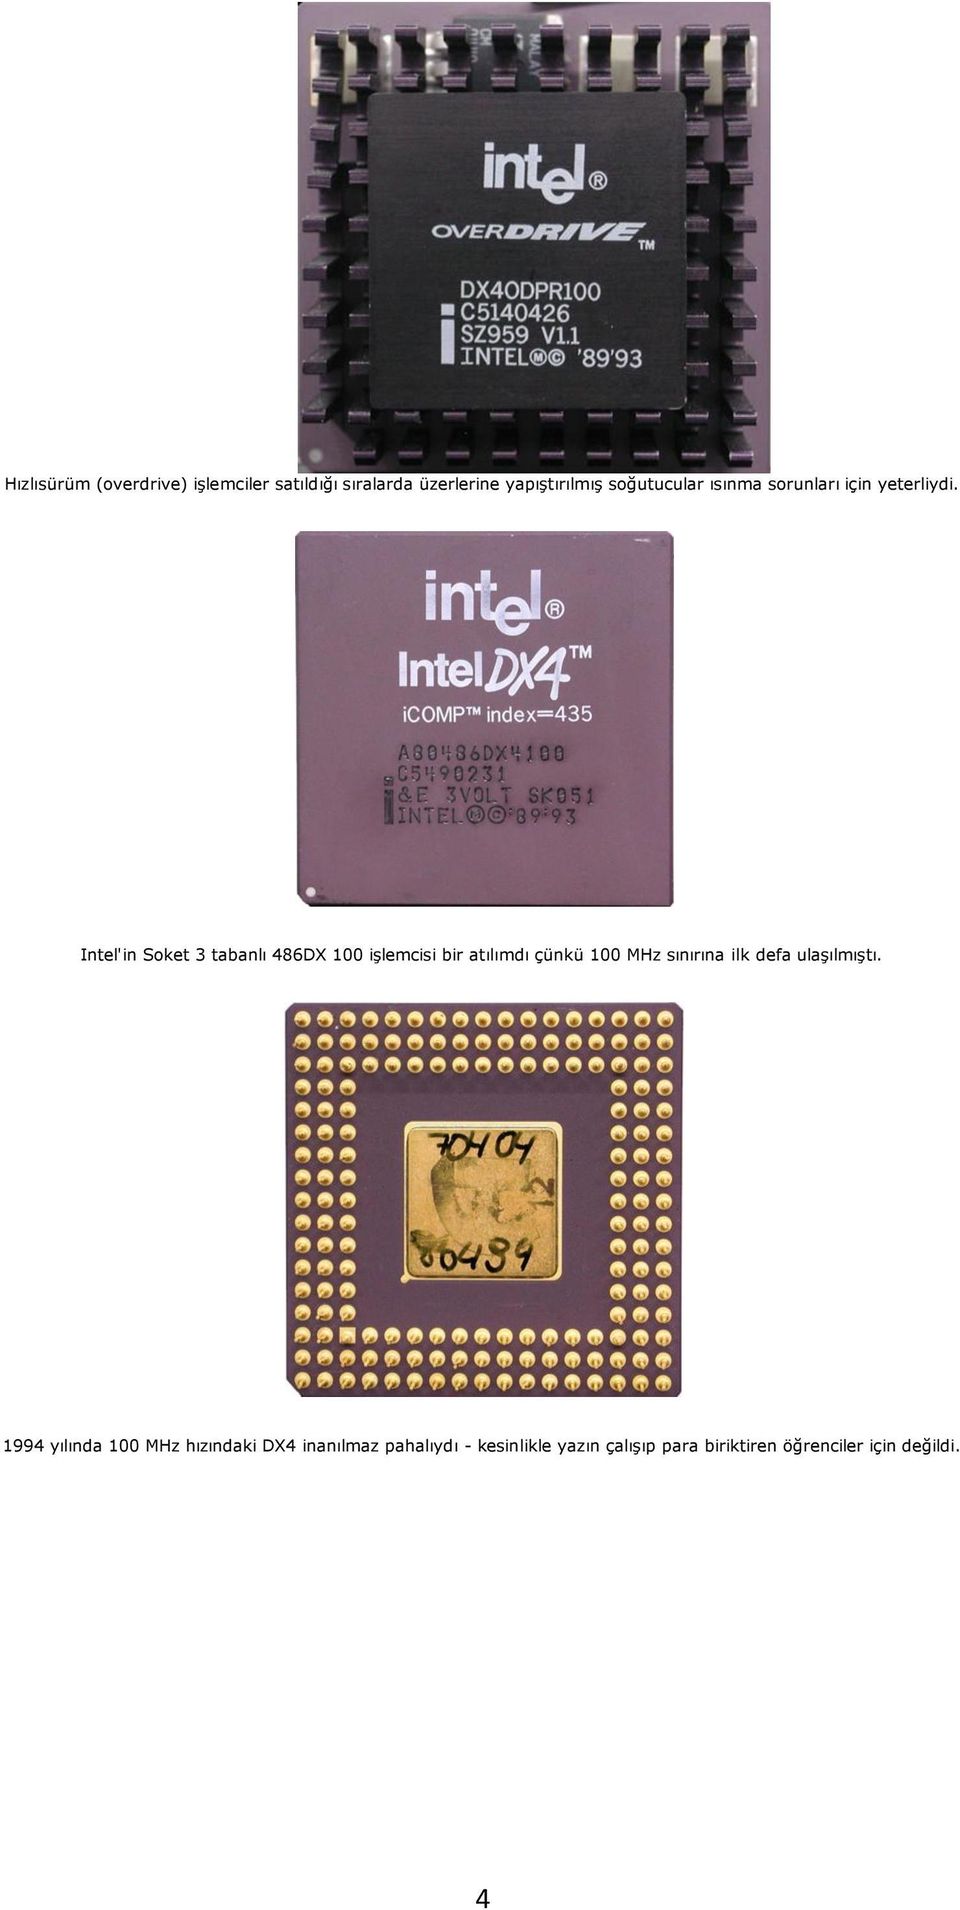 Intel'in Soket 3 tabanlı 486DX 100 işlemcisi bir atılımdı çünkü 100 MHz sınırına ilk